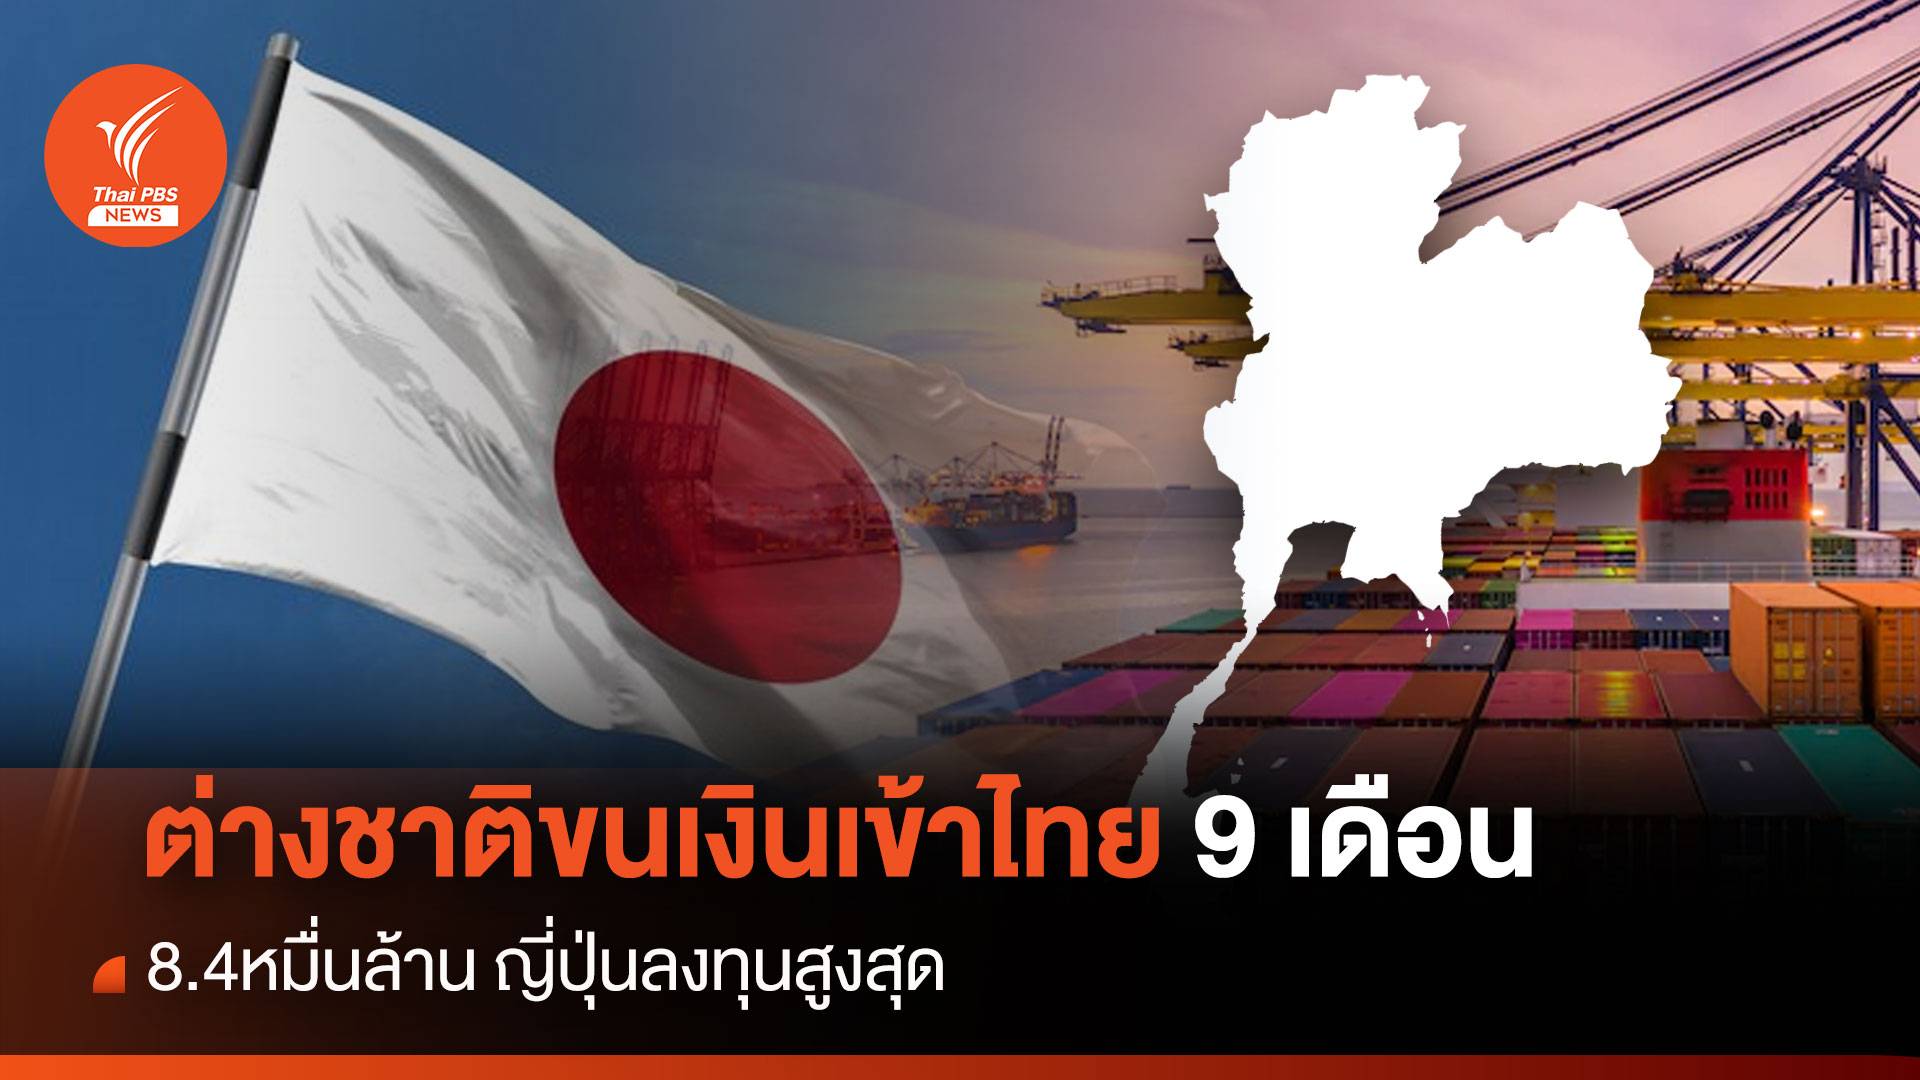 ต่างชาติขนเงินเข้าไทย 9 เดือน 8.4 หมื่นล้าน "ญี่ปุ่น" ลงทุนสูงสุด